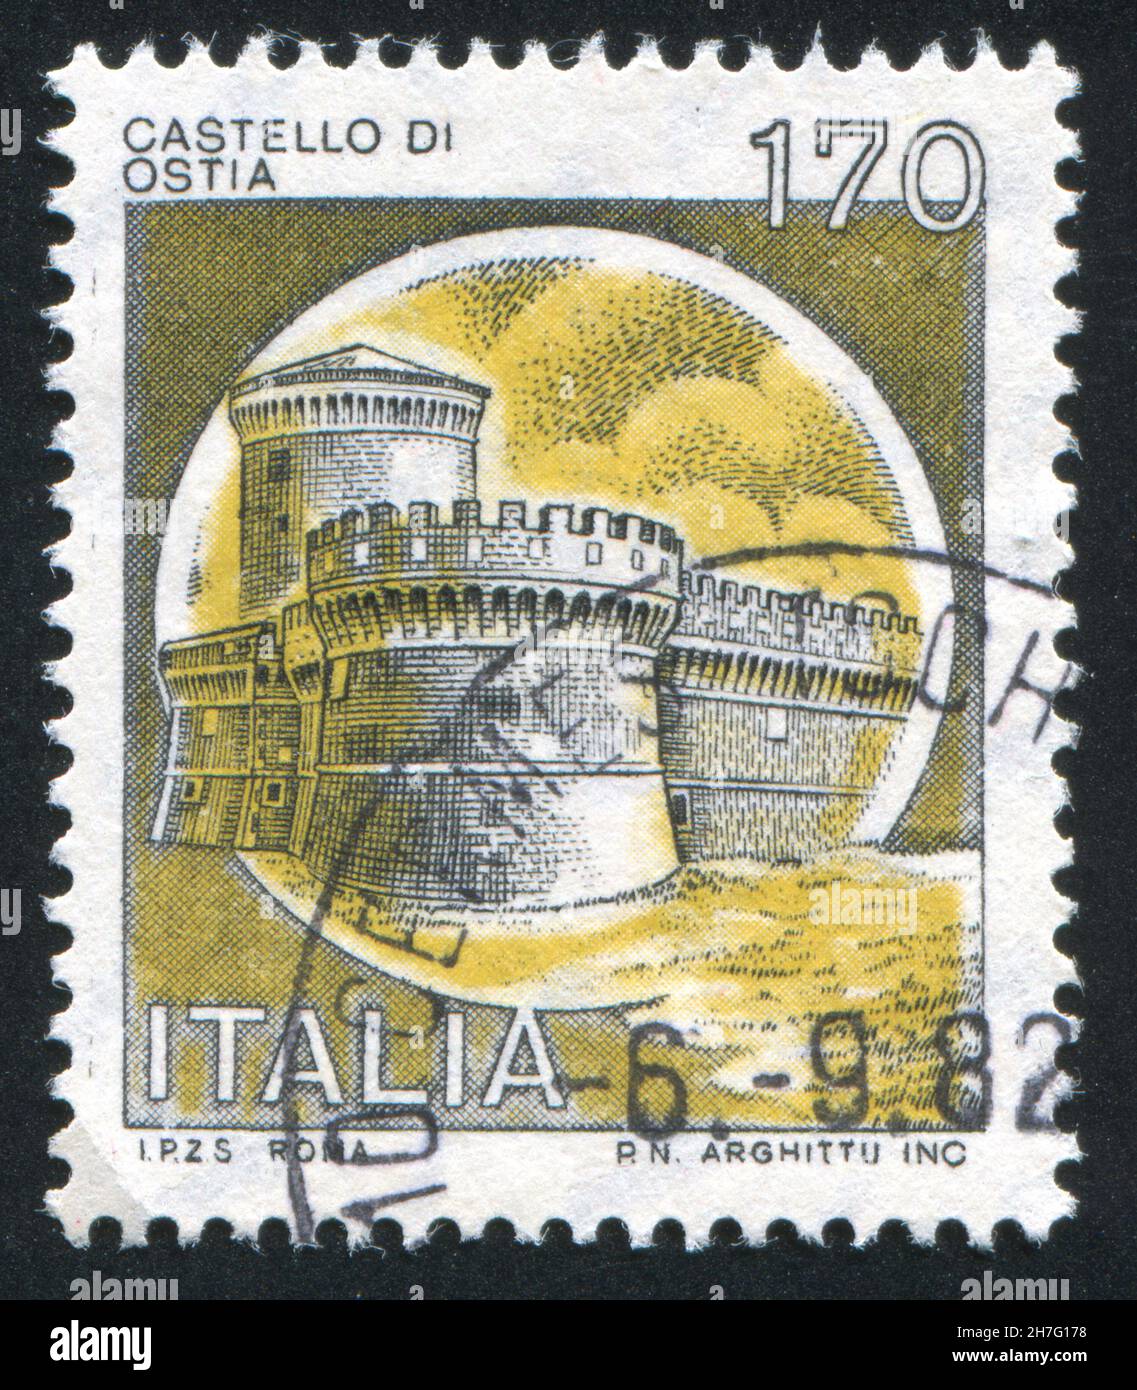 ITALIA - CIRCA 1980: Timbro stampato dall'Italia, mostra castello, Ostia, Roma, circa 1980 Foto Stock